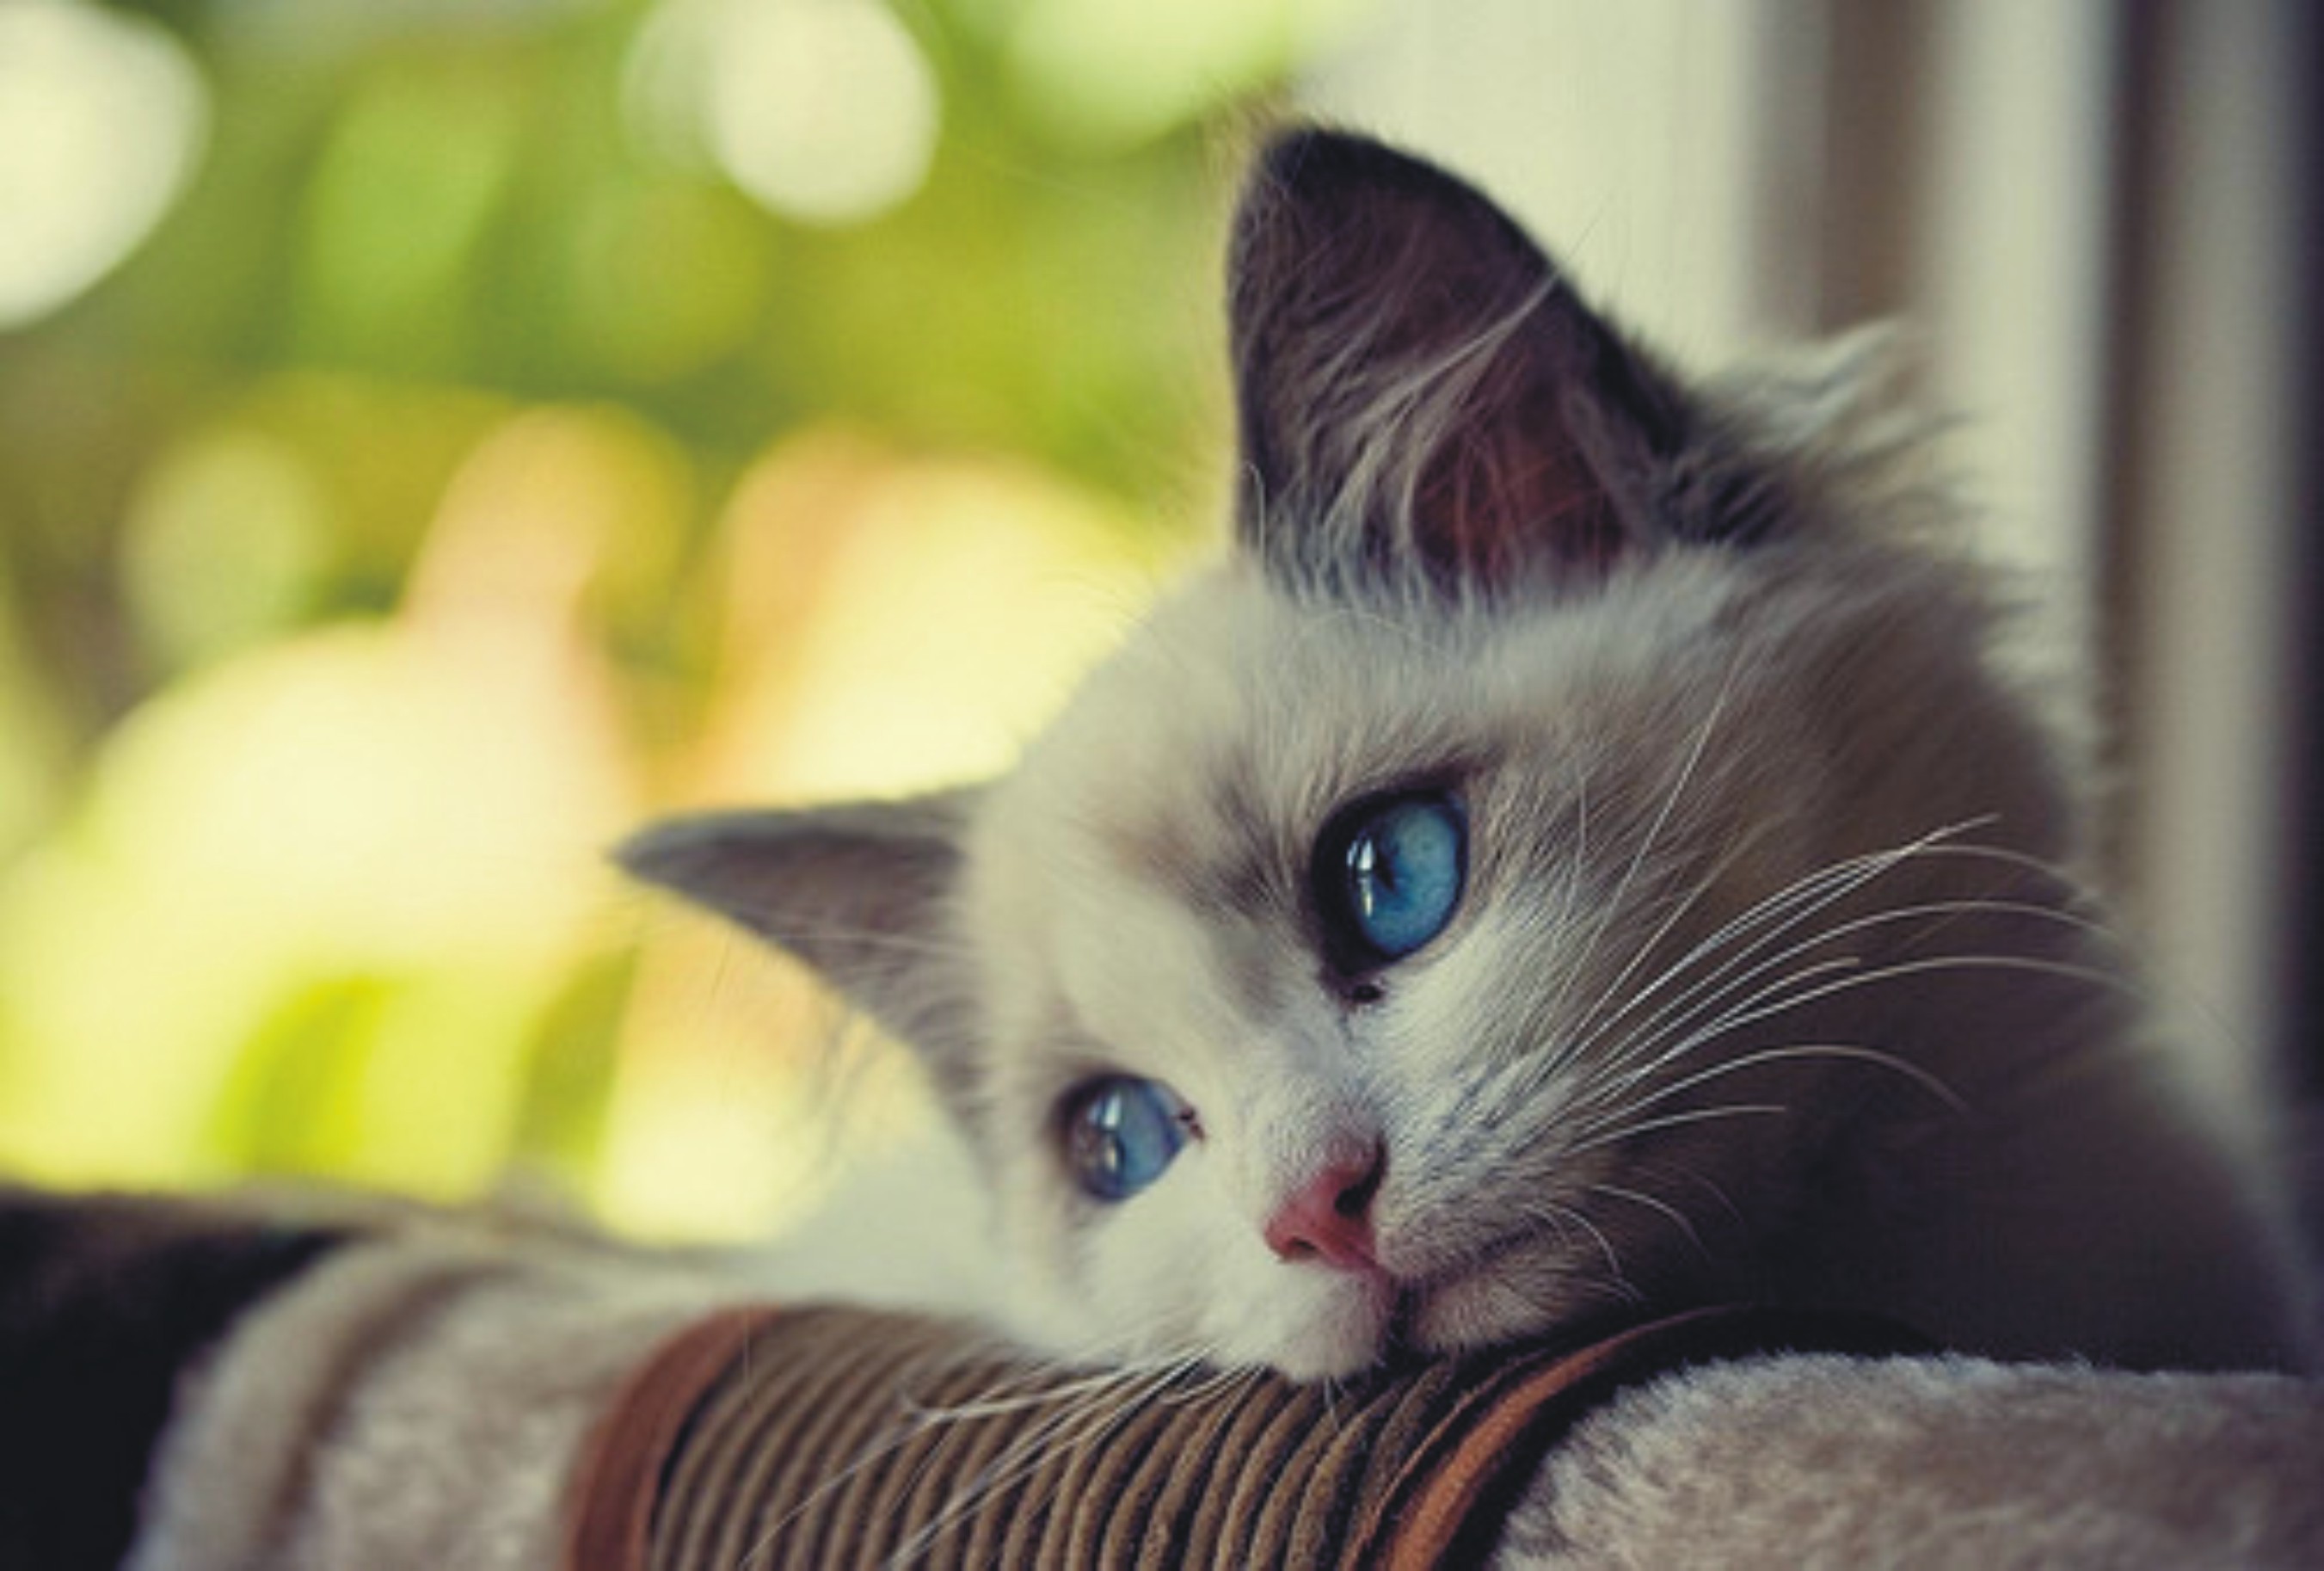 Sad cat - Imgur